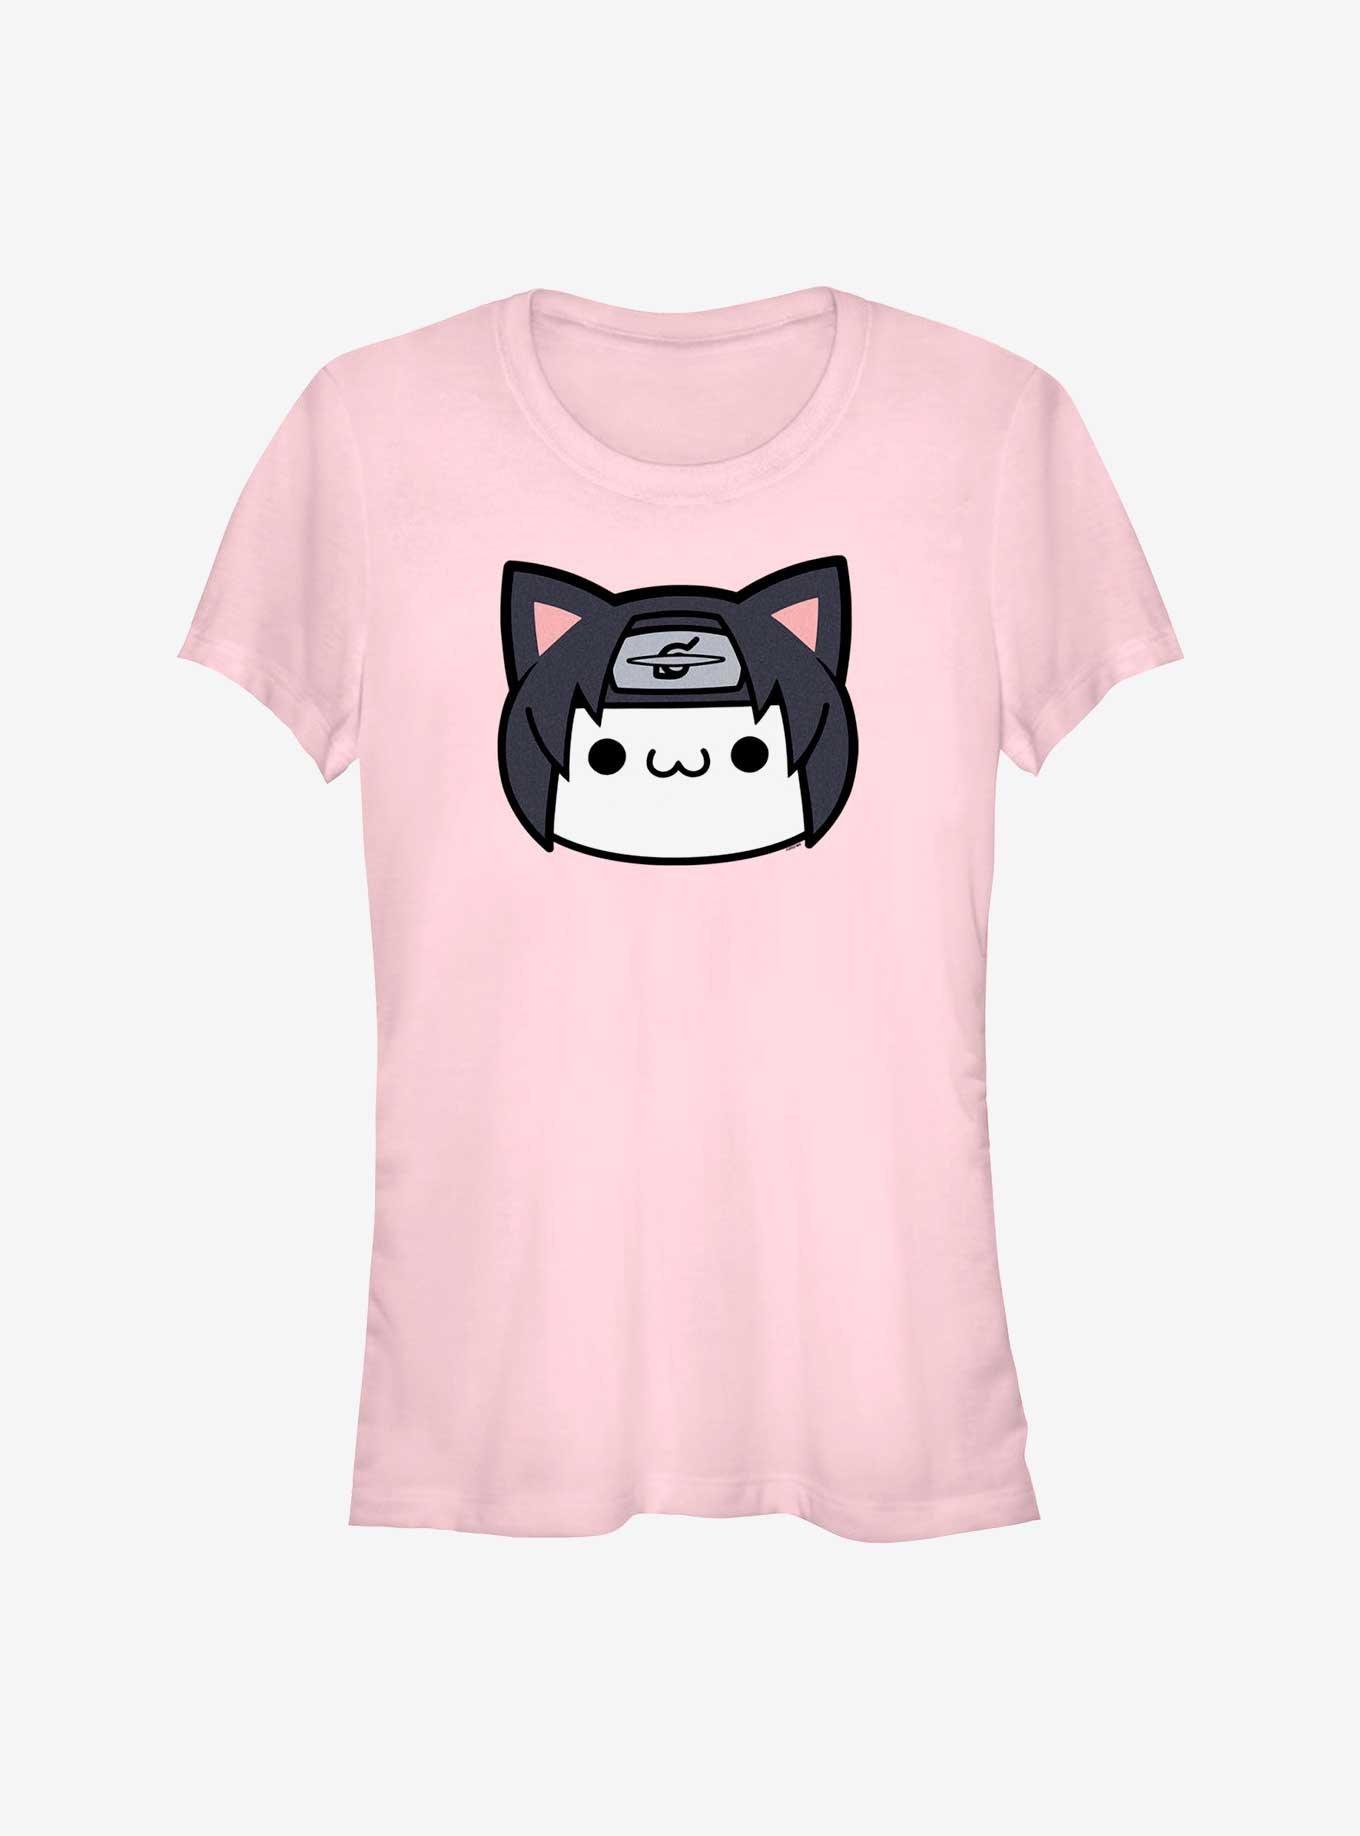 Naruto Itachi Cat Face Girls T-Shirt, LIGHT PINK, hi-res